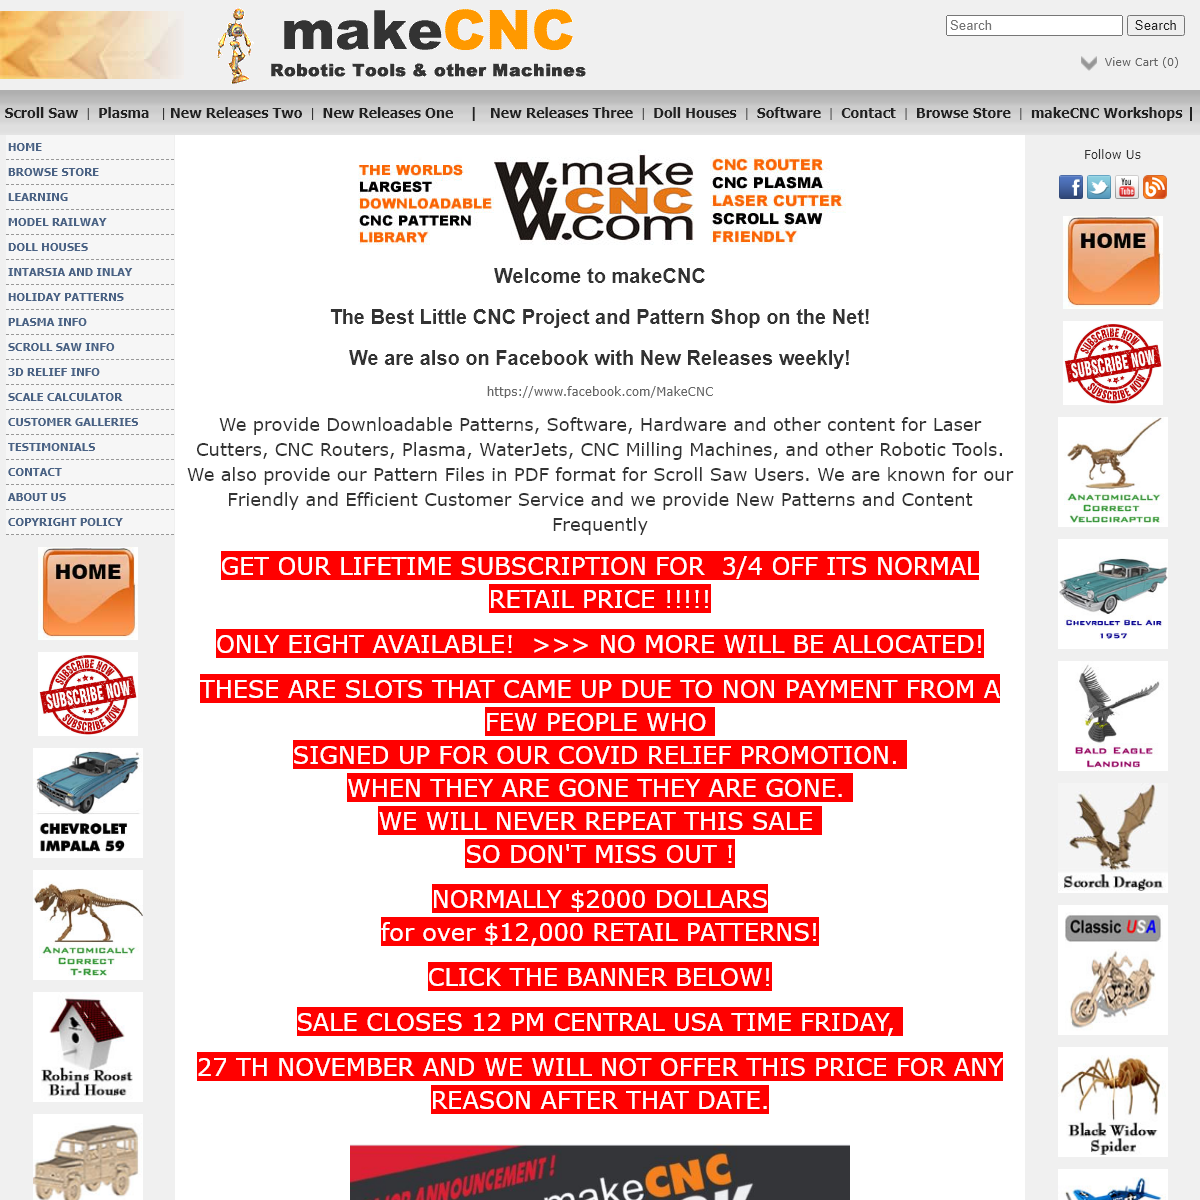 A complete backup of makecnc.com